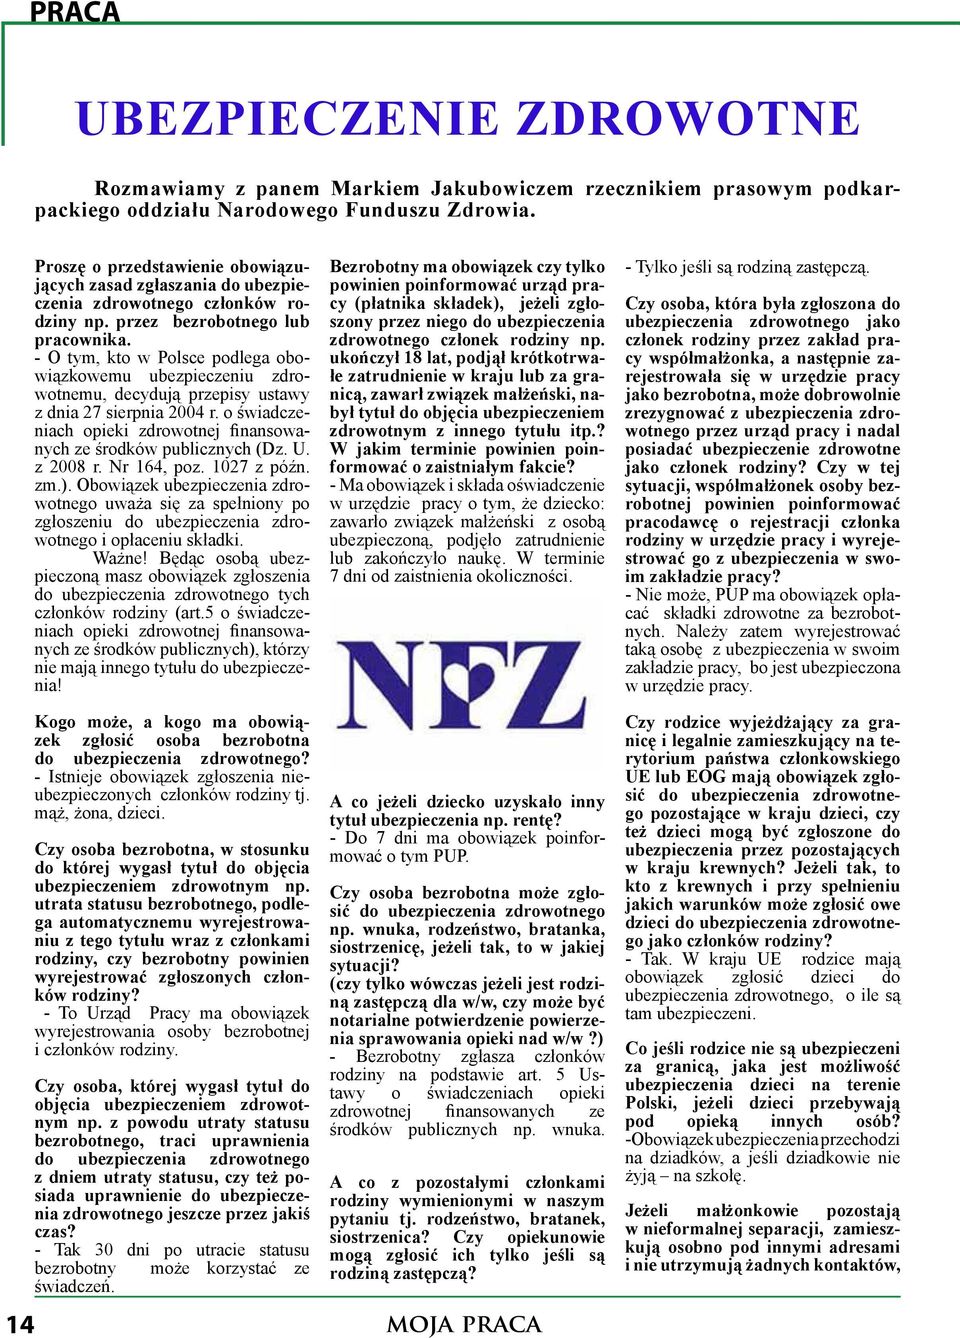 - O tym, kto w Polsce podlega obowiązkowemu ubezpieczeniu zdrowotnemu, decydują przepisy ustawy z dnia 27 sierpnia 2004 r. o świadczeniach opieki zdrowotnej finansowanych ze środków publicznych (Dz.